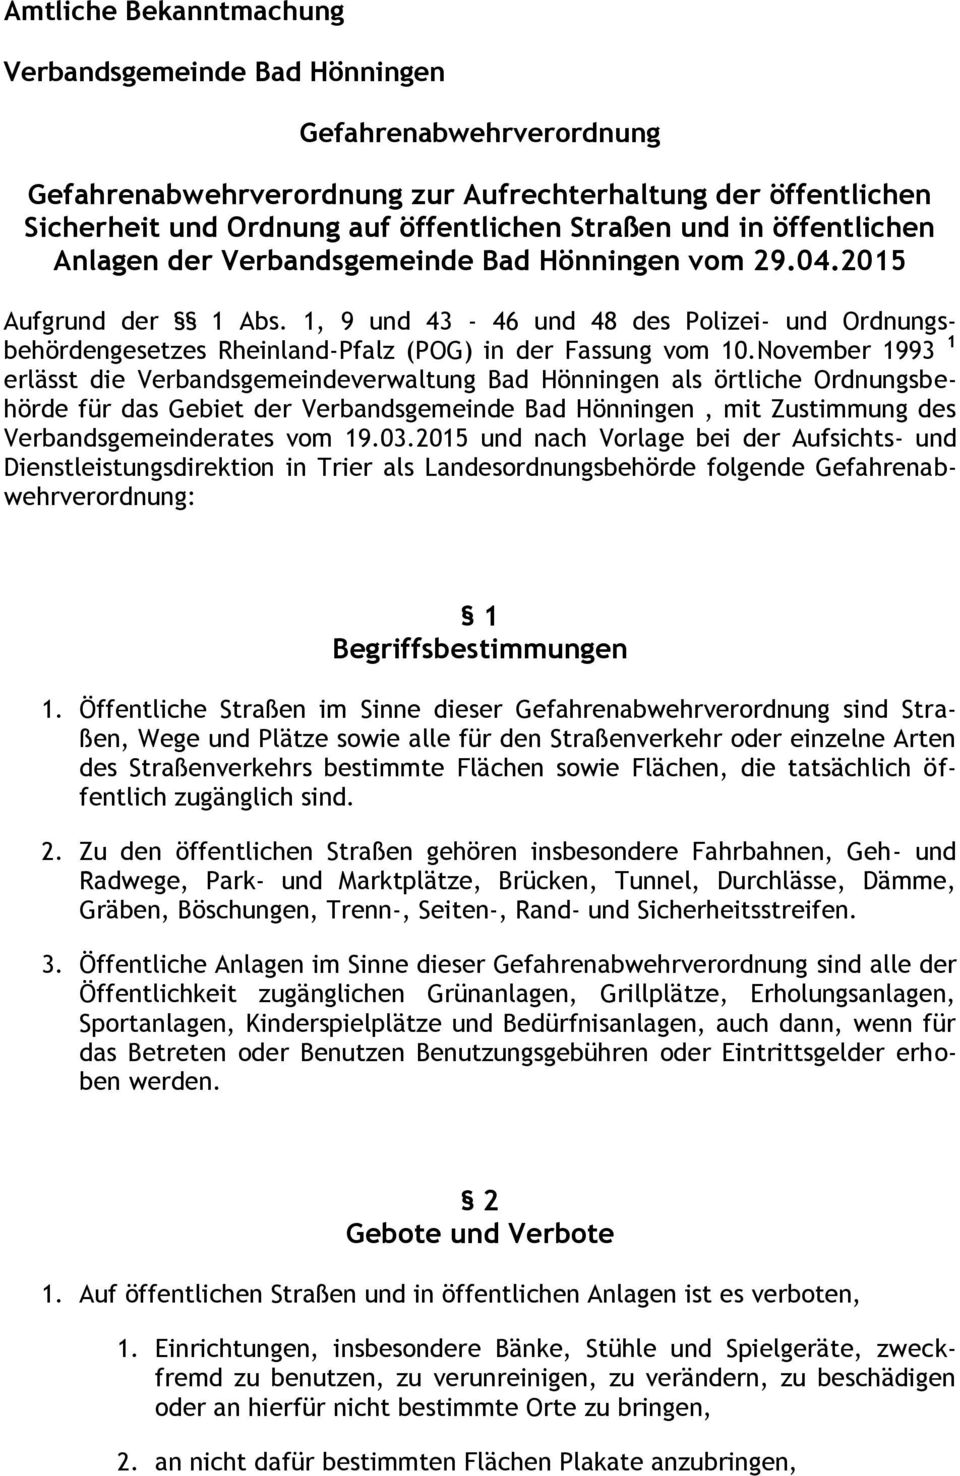 November 1993 1 erlässt die Verbandsgemeindeverwaltung Bad Hönningen als örtliche Ordnungsbehörde für das Gebiet der Verbandsgemeinde Bad Hönningen, mit Zustimmung des Verbandsgemeinderates vom 19.03.